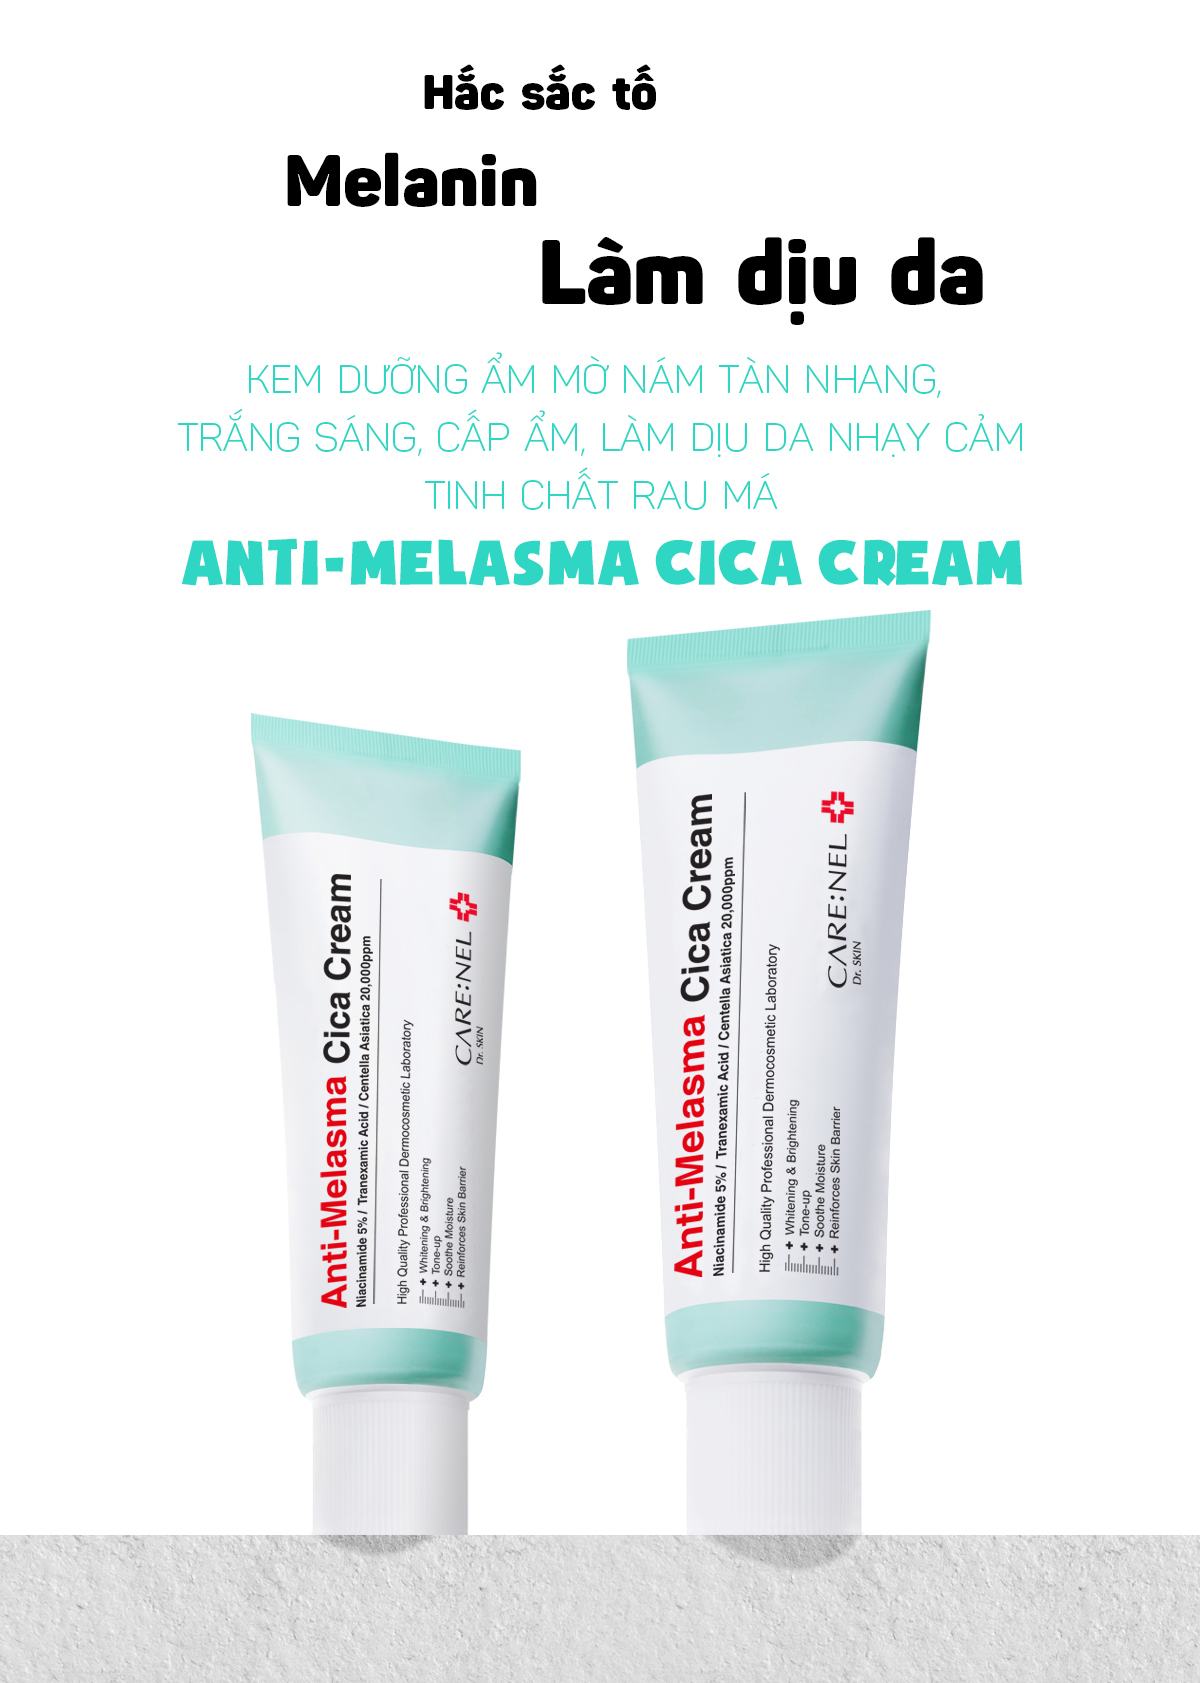 Kem Duong Anti Melasma Cica Cream (1)